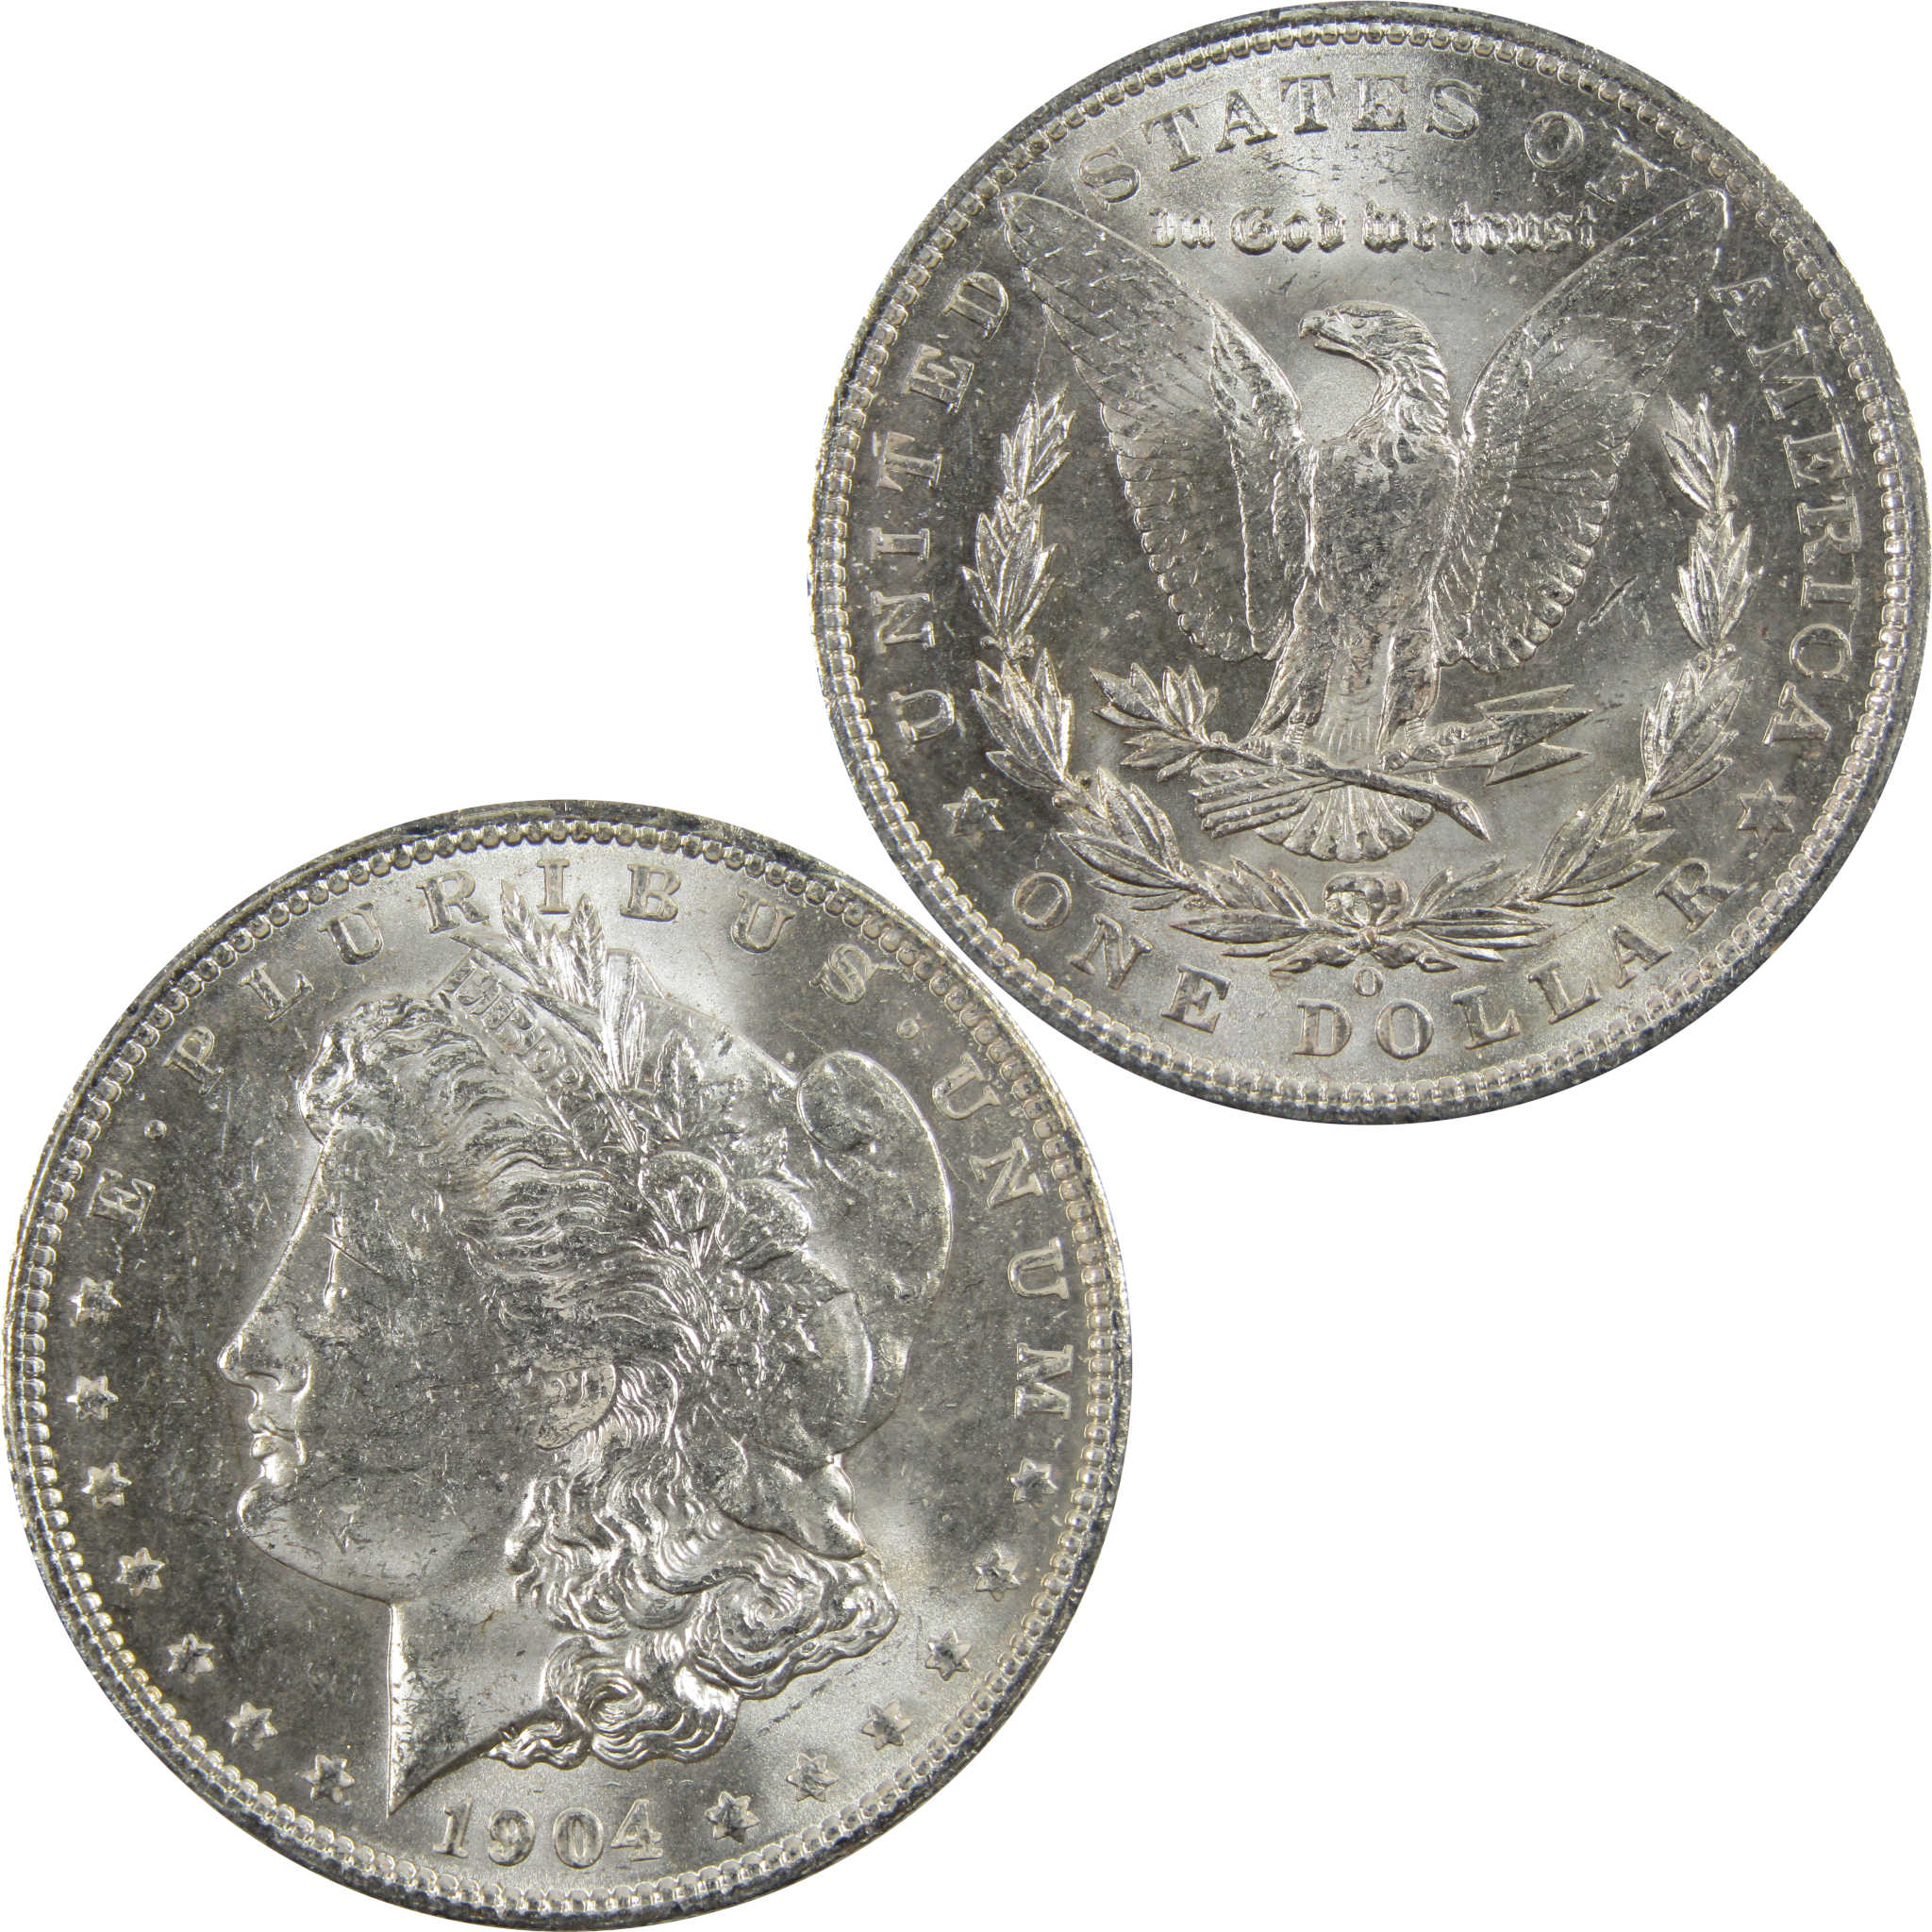 1904 O Morgan Dollar BU Uncirculated 90% Silver $1 Coin SKU:I5277 - Morgan coin - Morgan silver dollar - Morgan silver dollar for sale - Profile Coins &amp; Collectibles